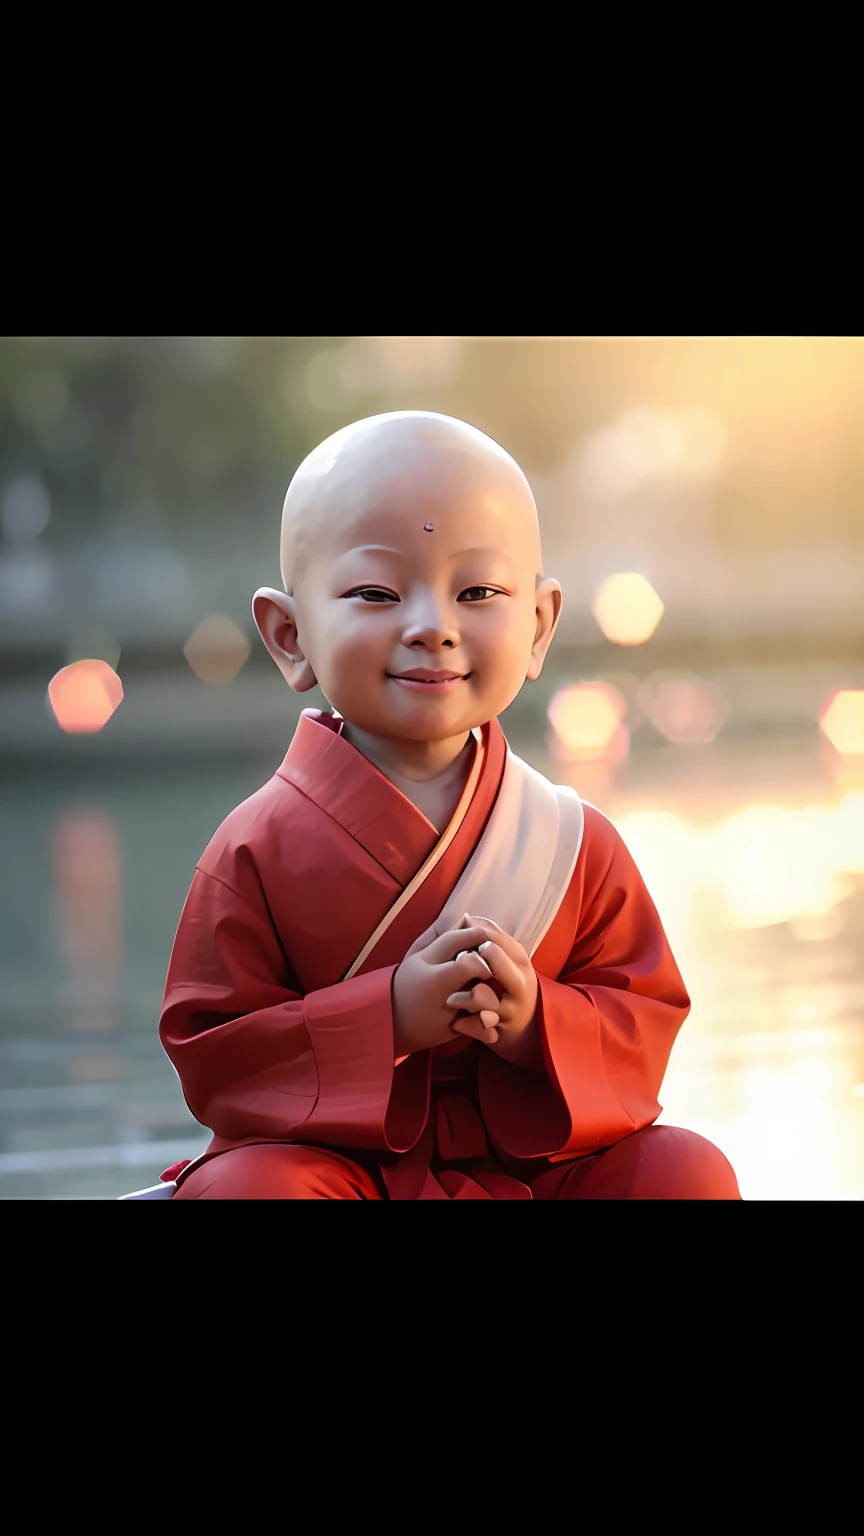 Close-up de um roupão vermelho sentado em uma pedra, um sorriso sereno, Sorriso inocente, com uma expressão feliz, sorriso leve, Doce sorriso, expressão feliz e espirituosa, roupas de monge, pequeno sorriso, budista, monge budista, com um lindo sorriso, Crianças felizes, pequeno sorriso largo, SORRISO TÍMIDO, budismo, linda e sorridente